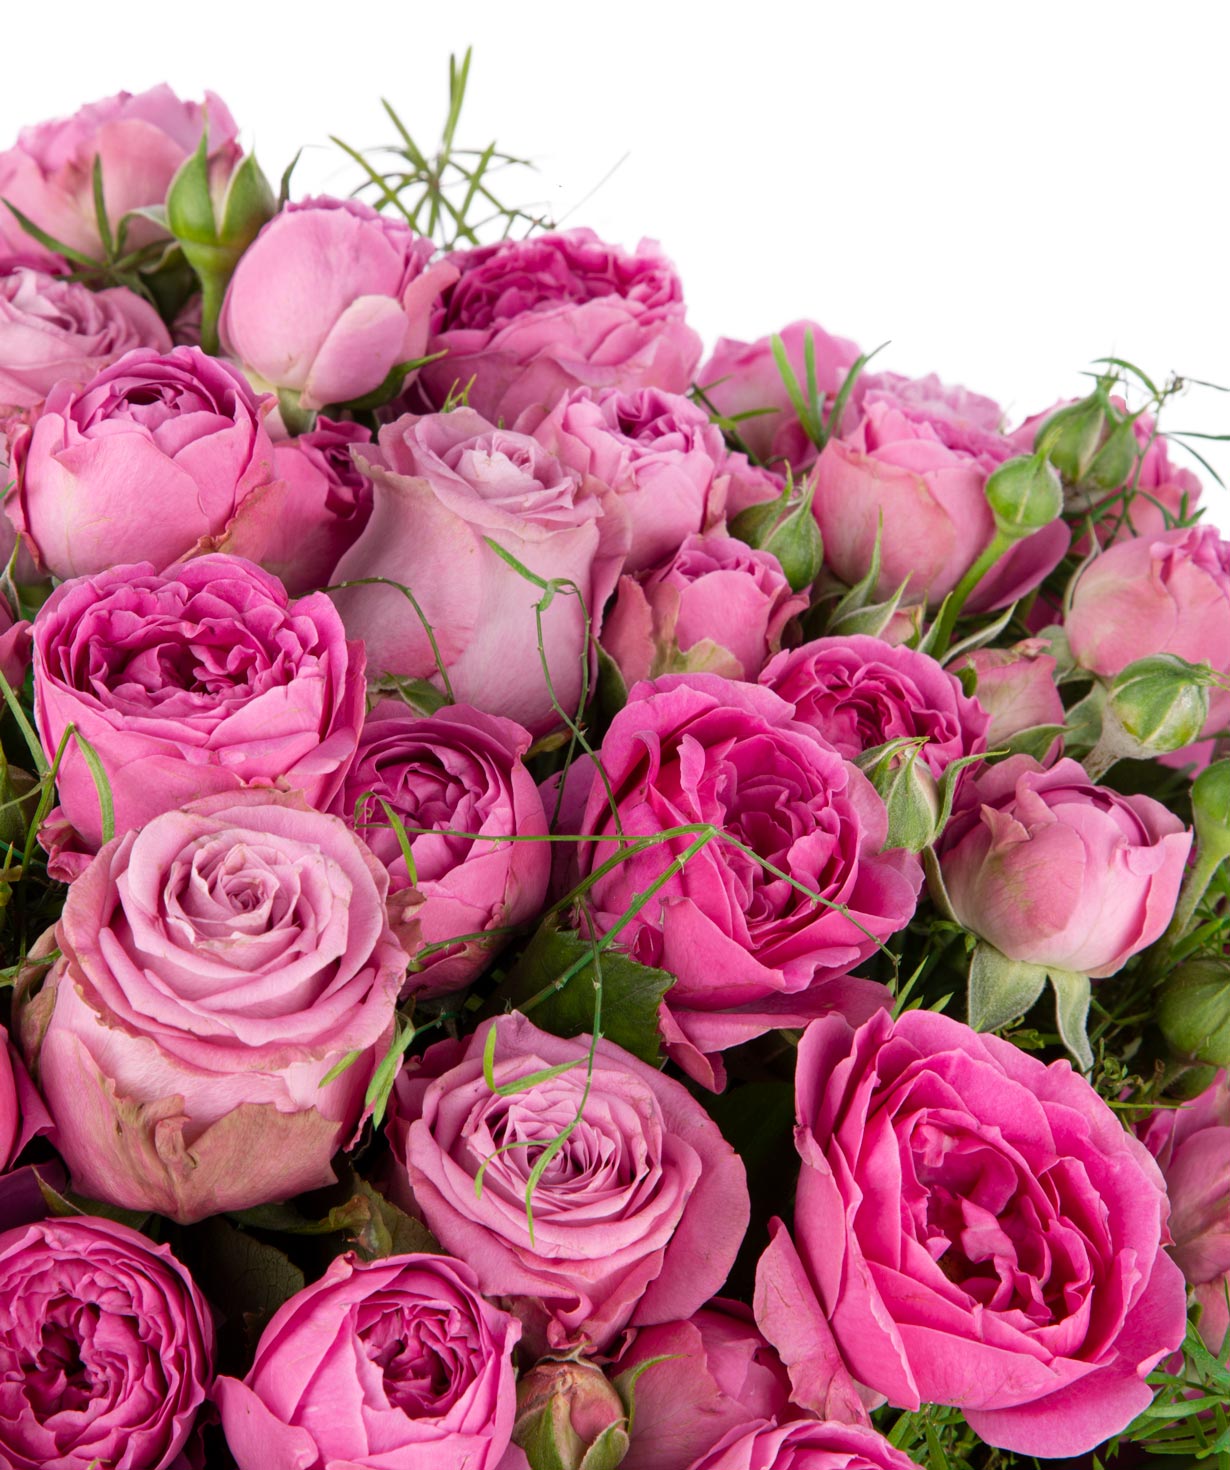 Ծաղկեփունջ «Օլբորգ»  վարդերով և պիոնավարդերով